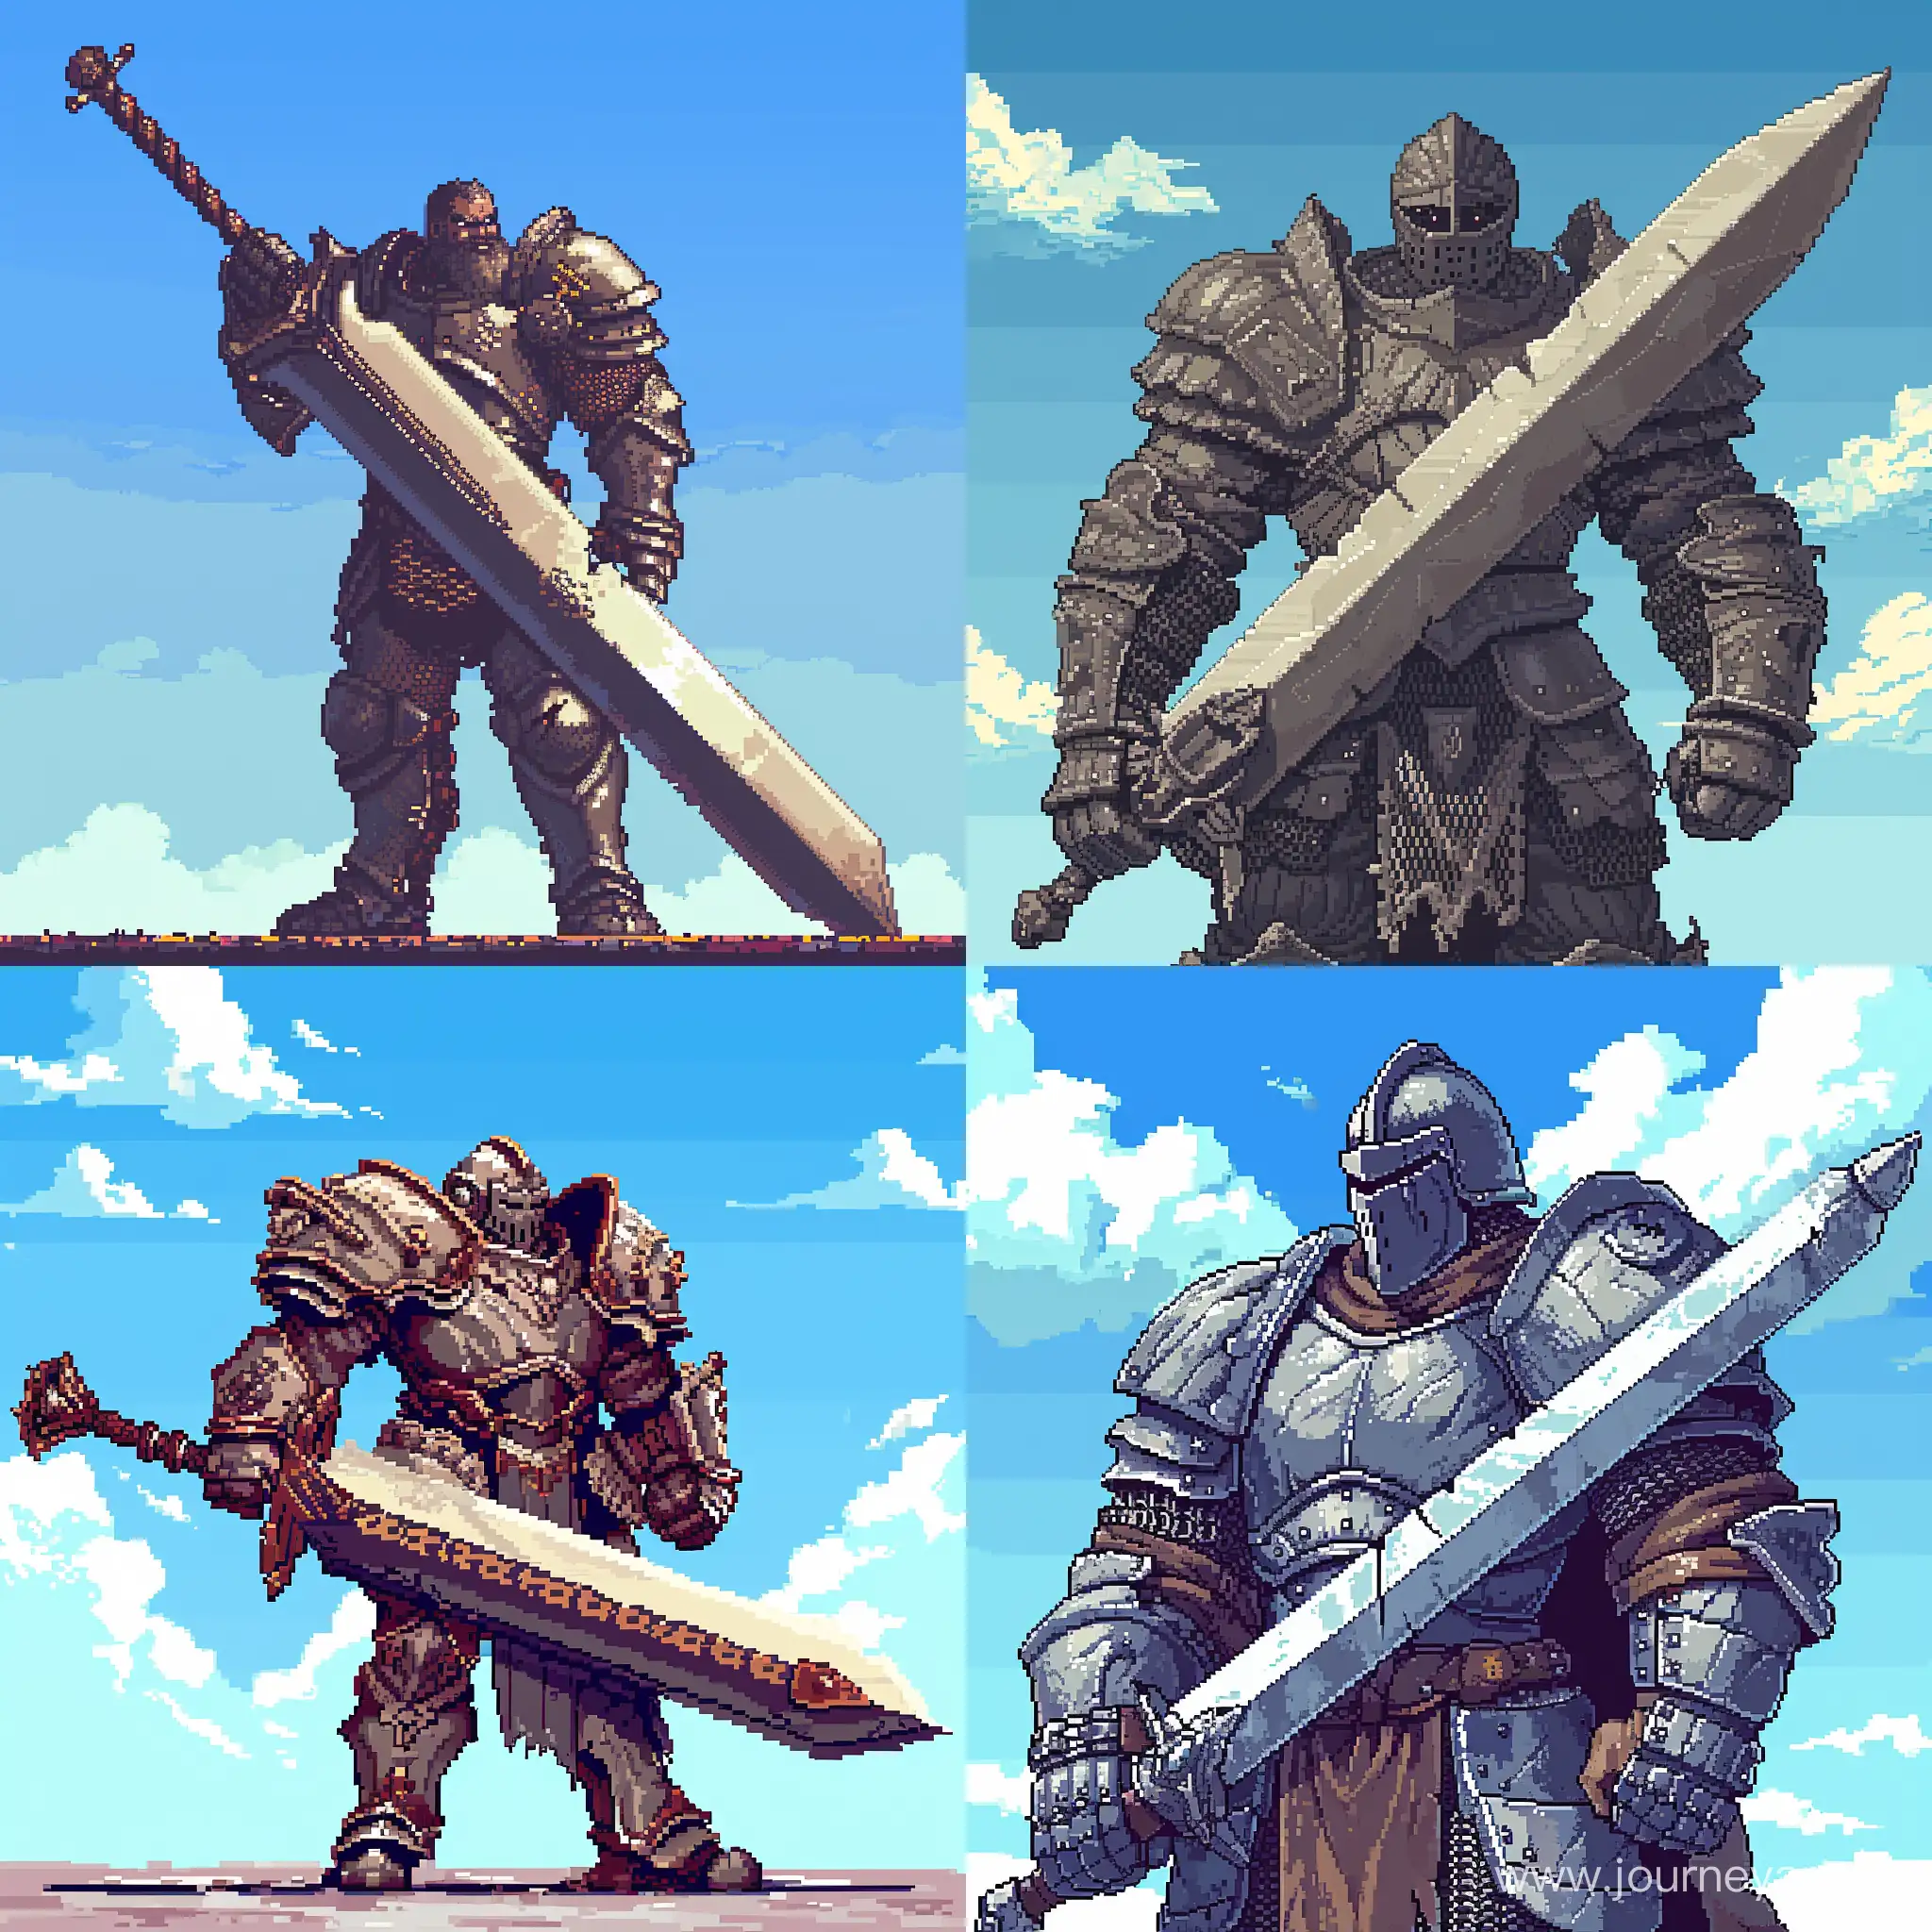 Grim-Armor-Knight-with-Huge-Sword-in-8Bit-Pixel-Art